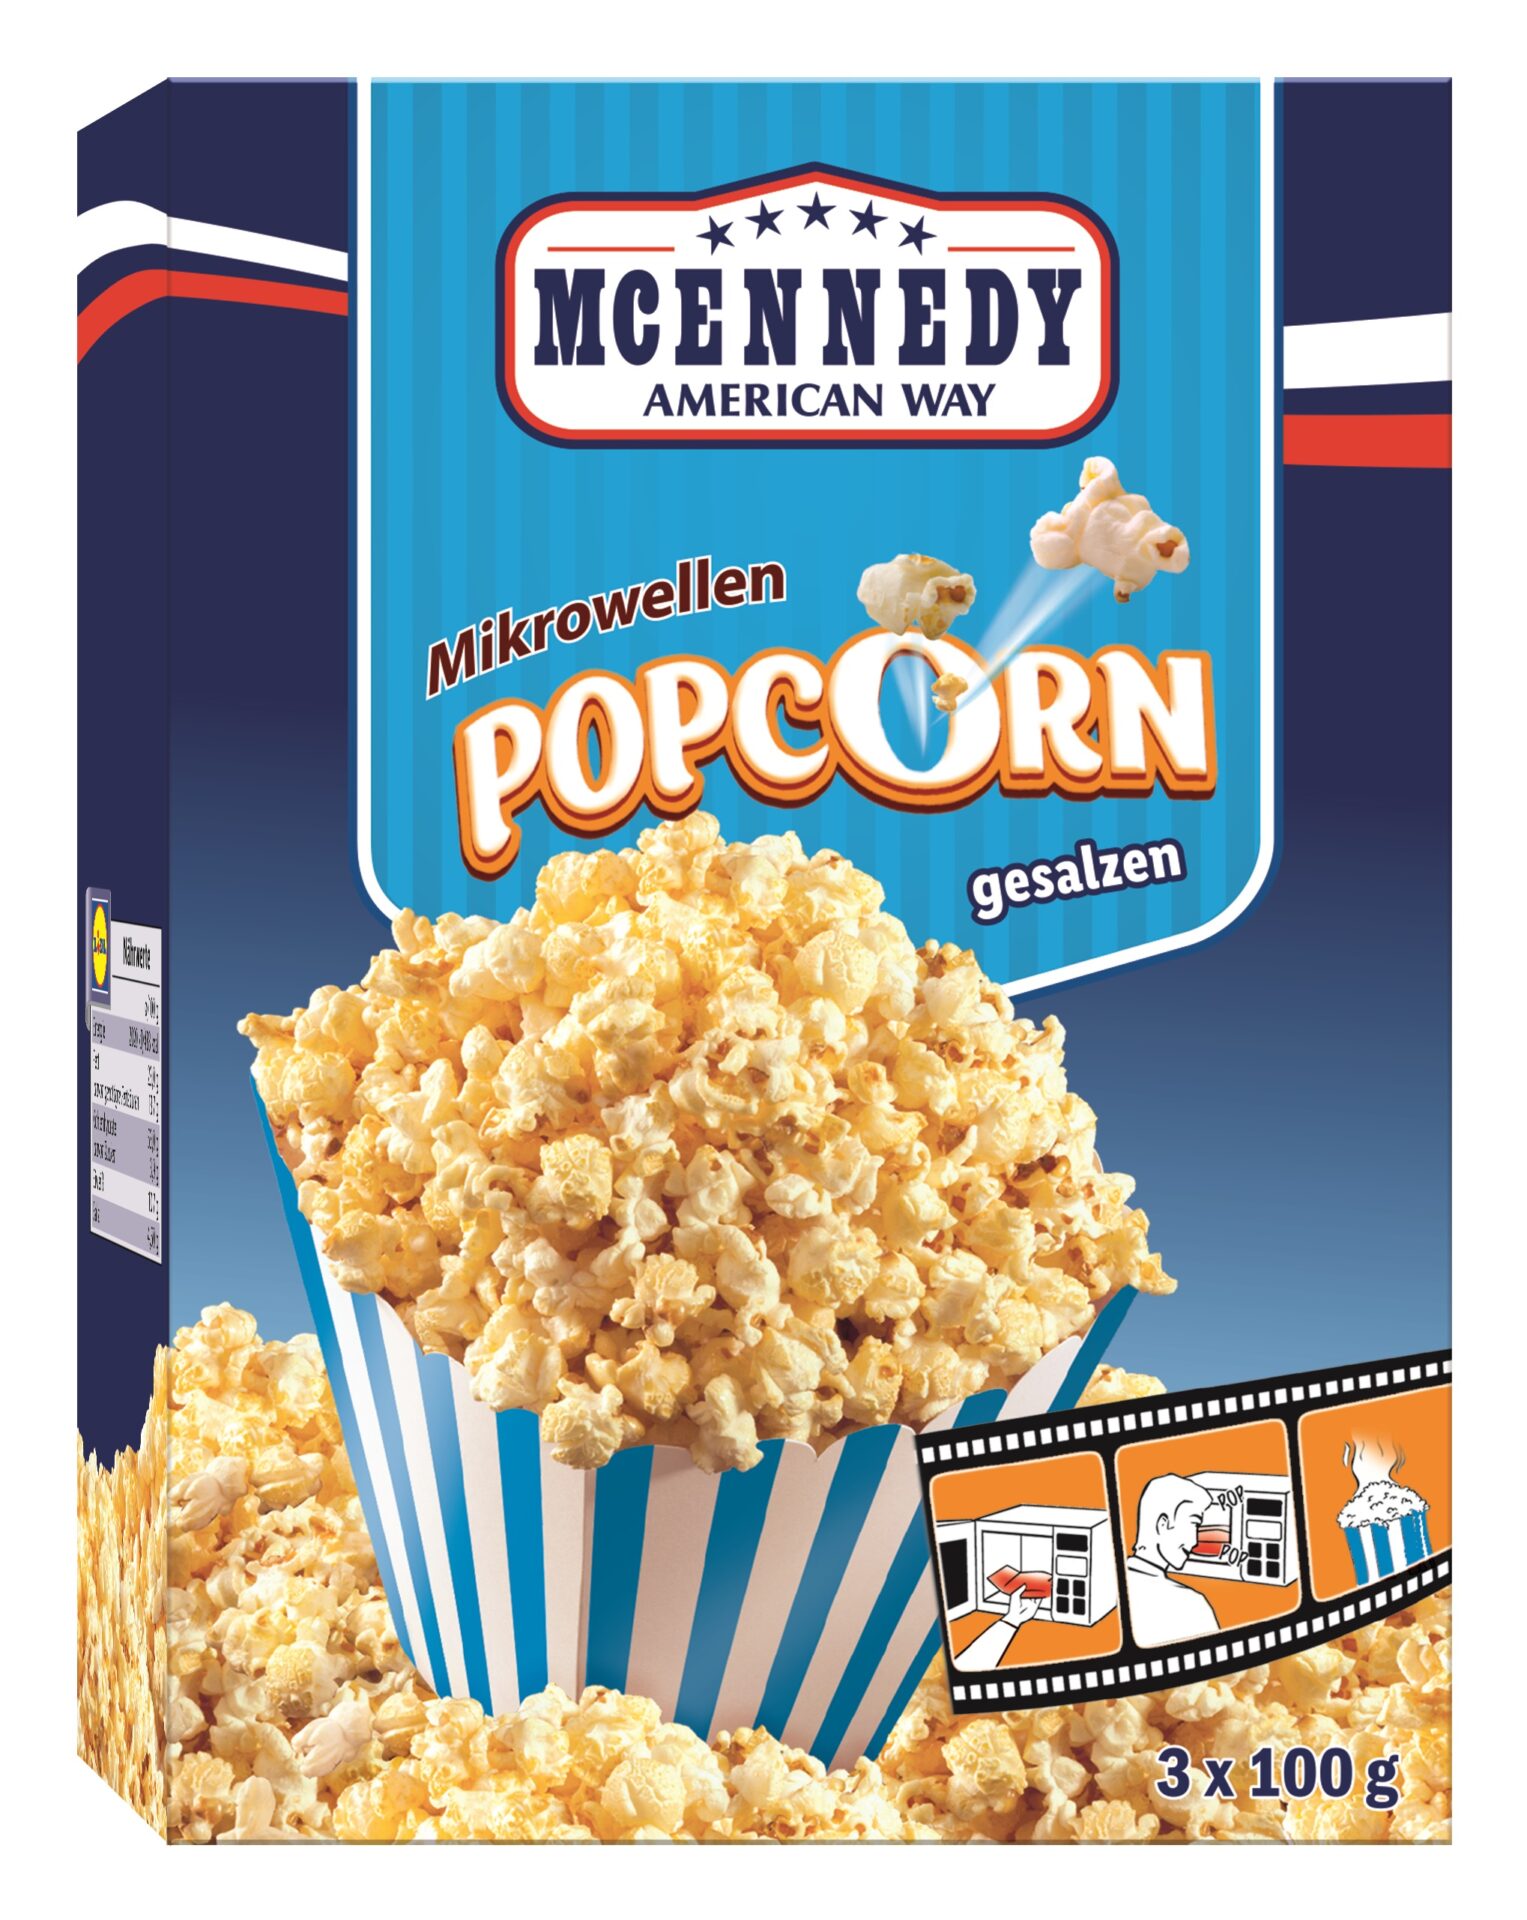 Warenrückruf “McEnnedy Mikrowellen Popcorn gesalzen, 3×100 g”